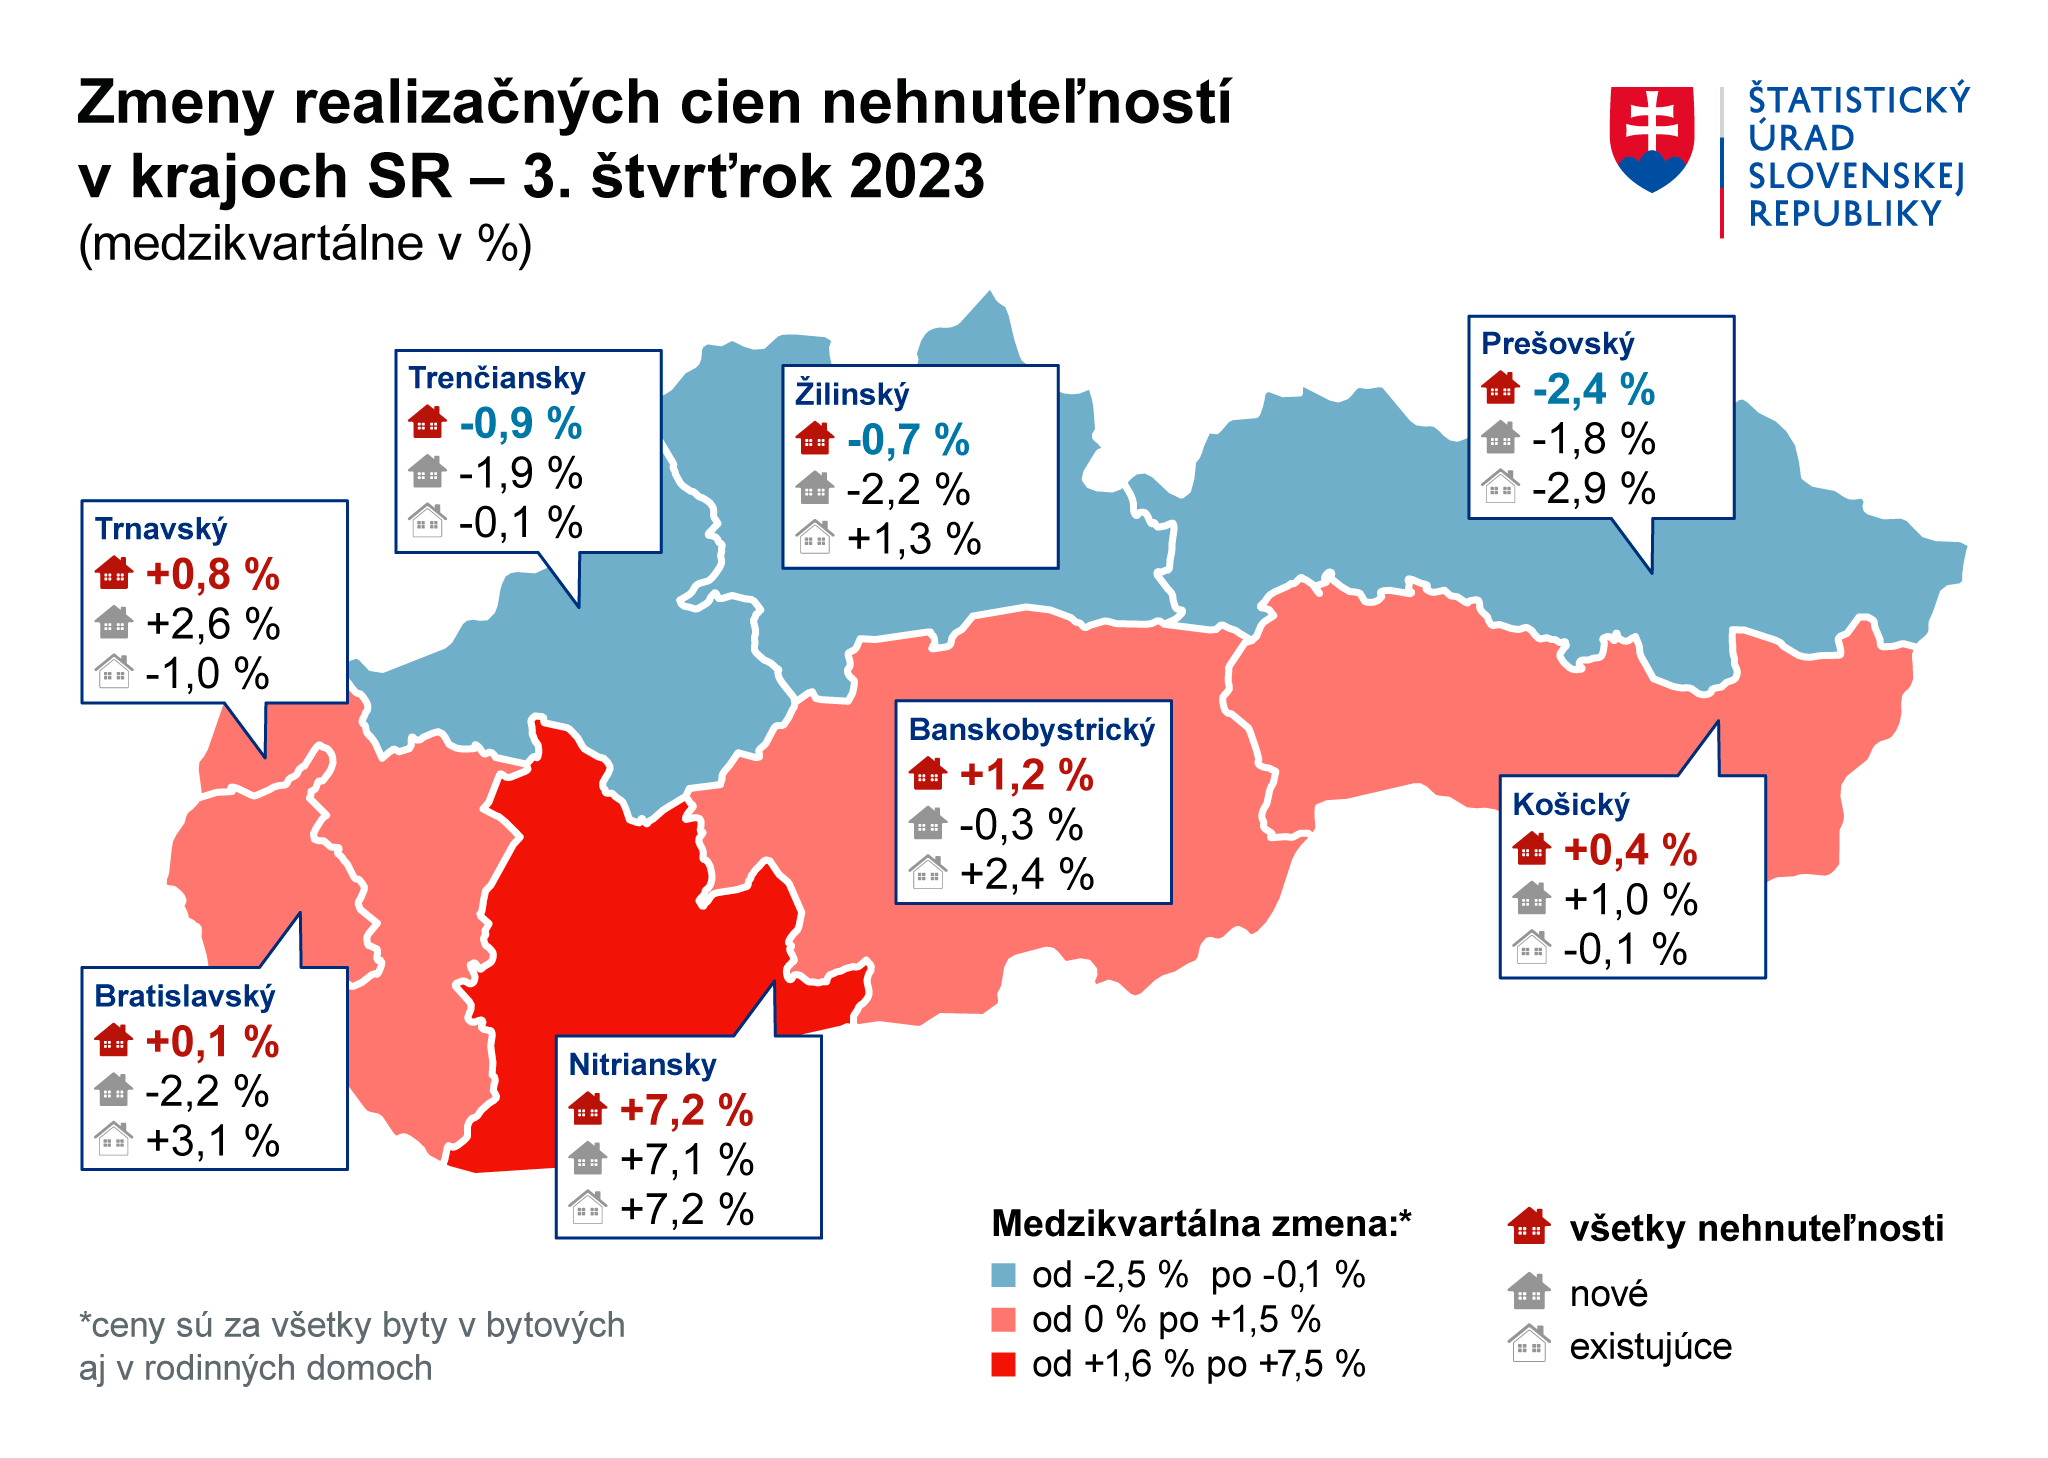 Изменение цен на жильё в Словакии в III квартале 2023 года. Источник: Статистическое управление